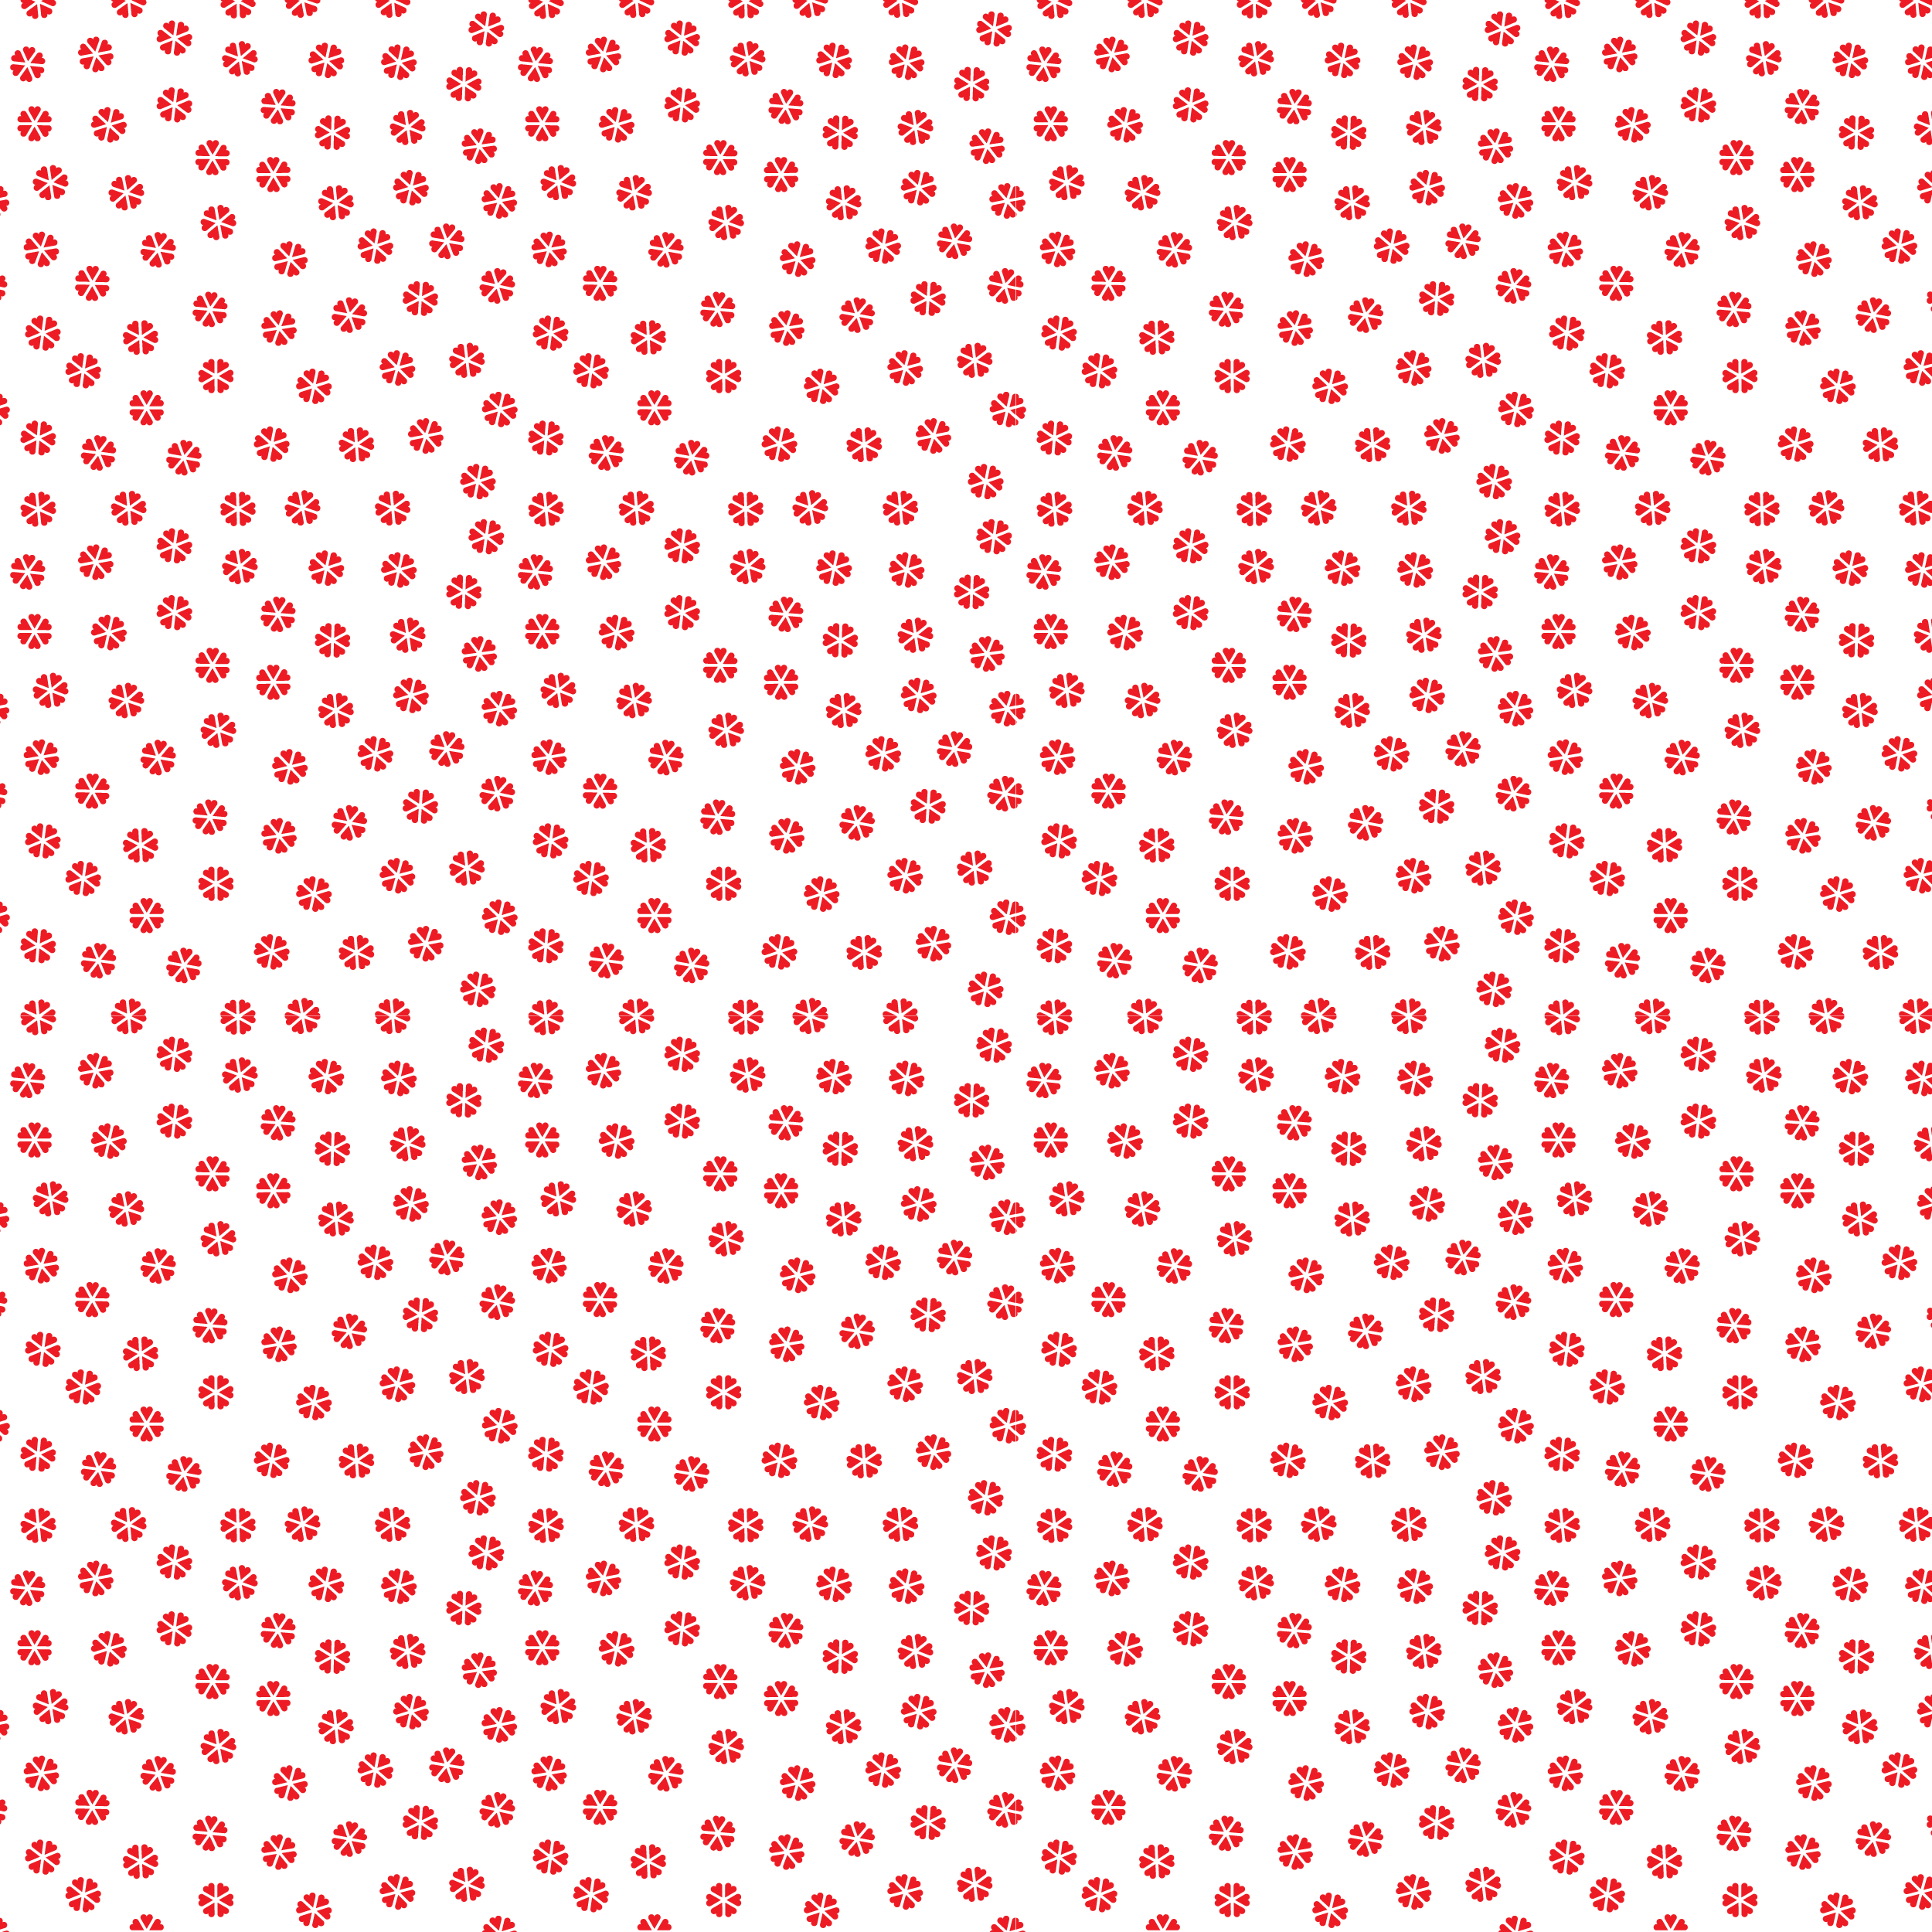 壁紙 背景イラスト 花の模様 柄 パターン No 069 赤花びら たくさん